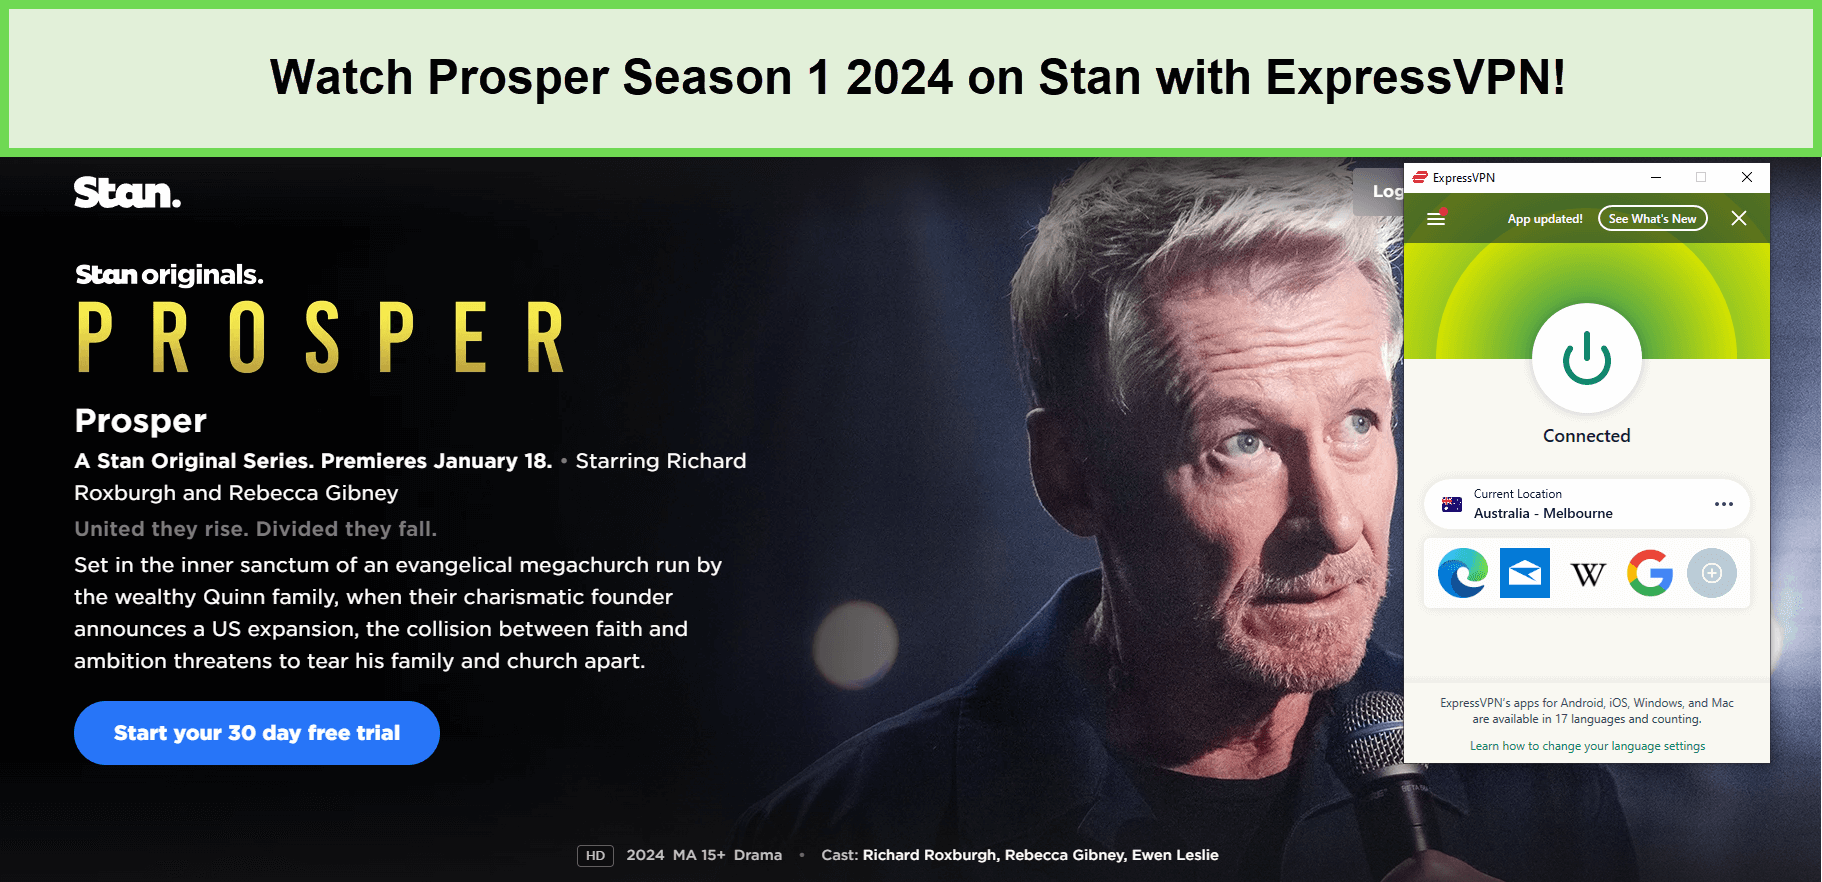 Watch-Prosper-Season-1-2024-in-UK-on-Stan-with-ExpressVPN